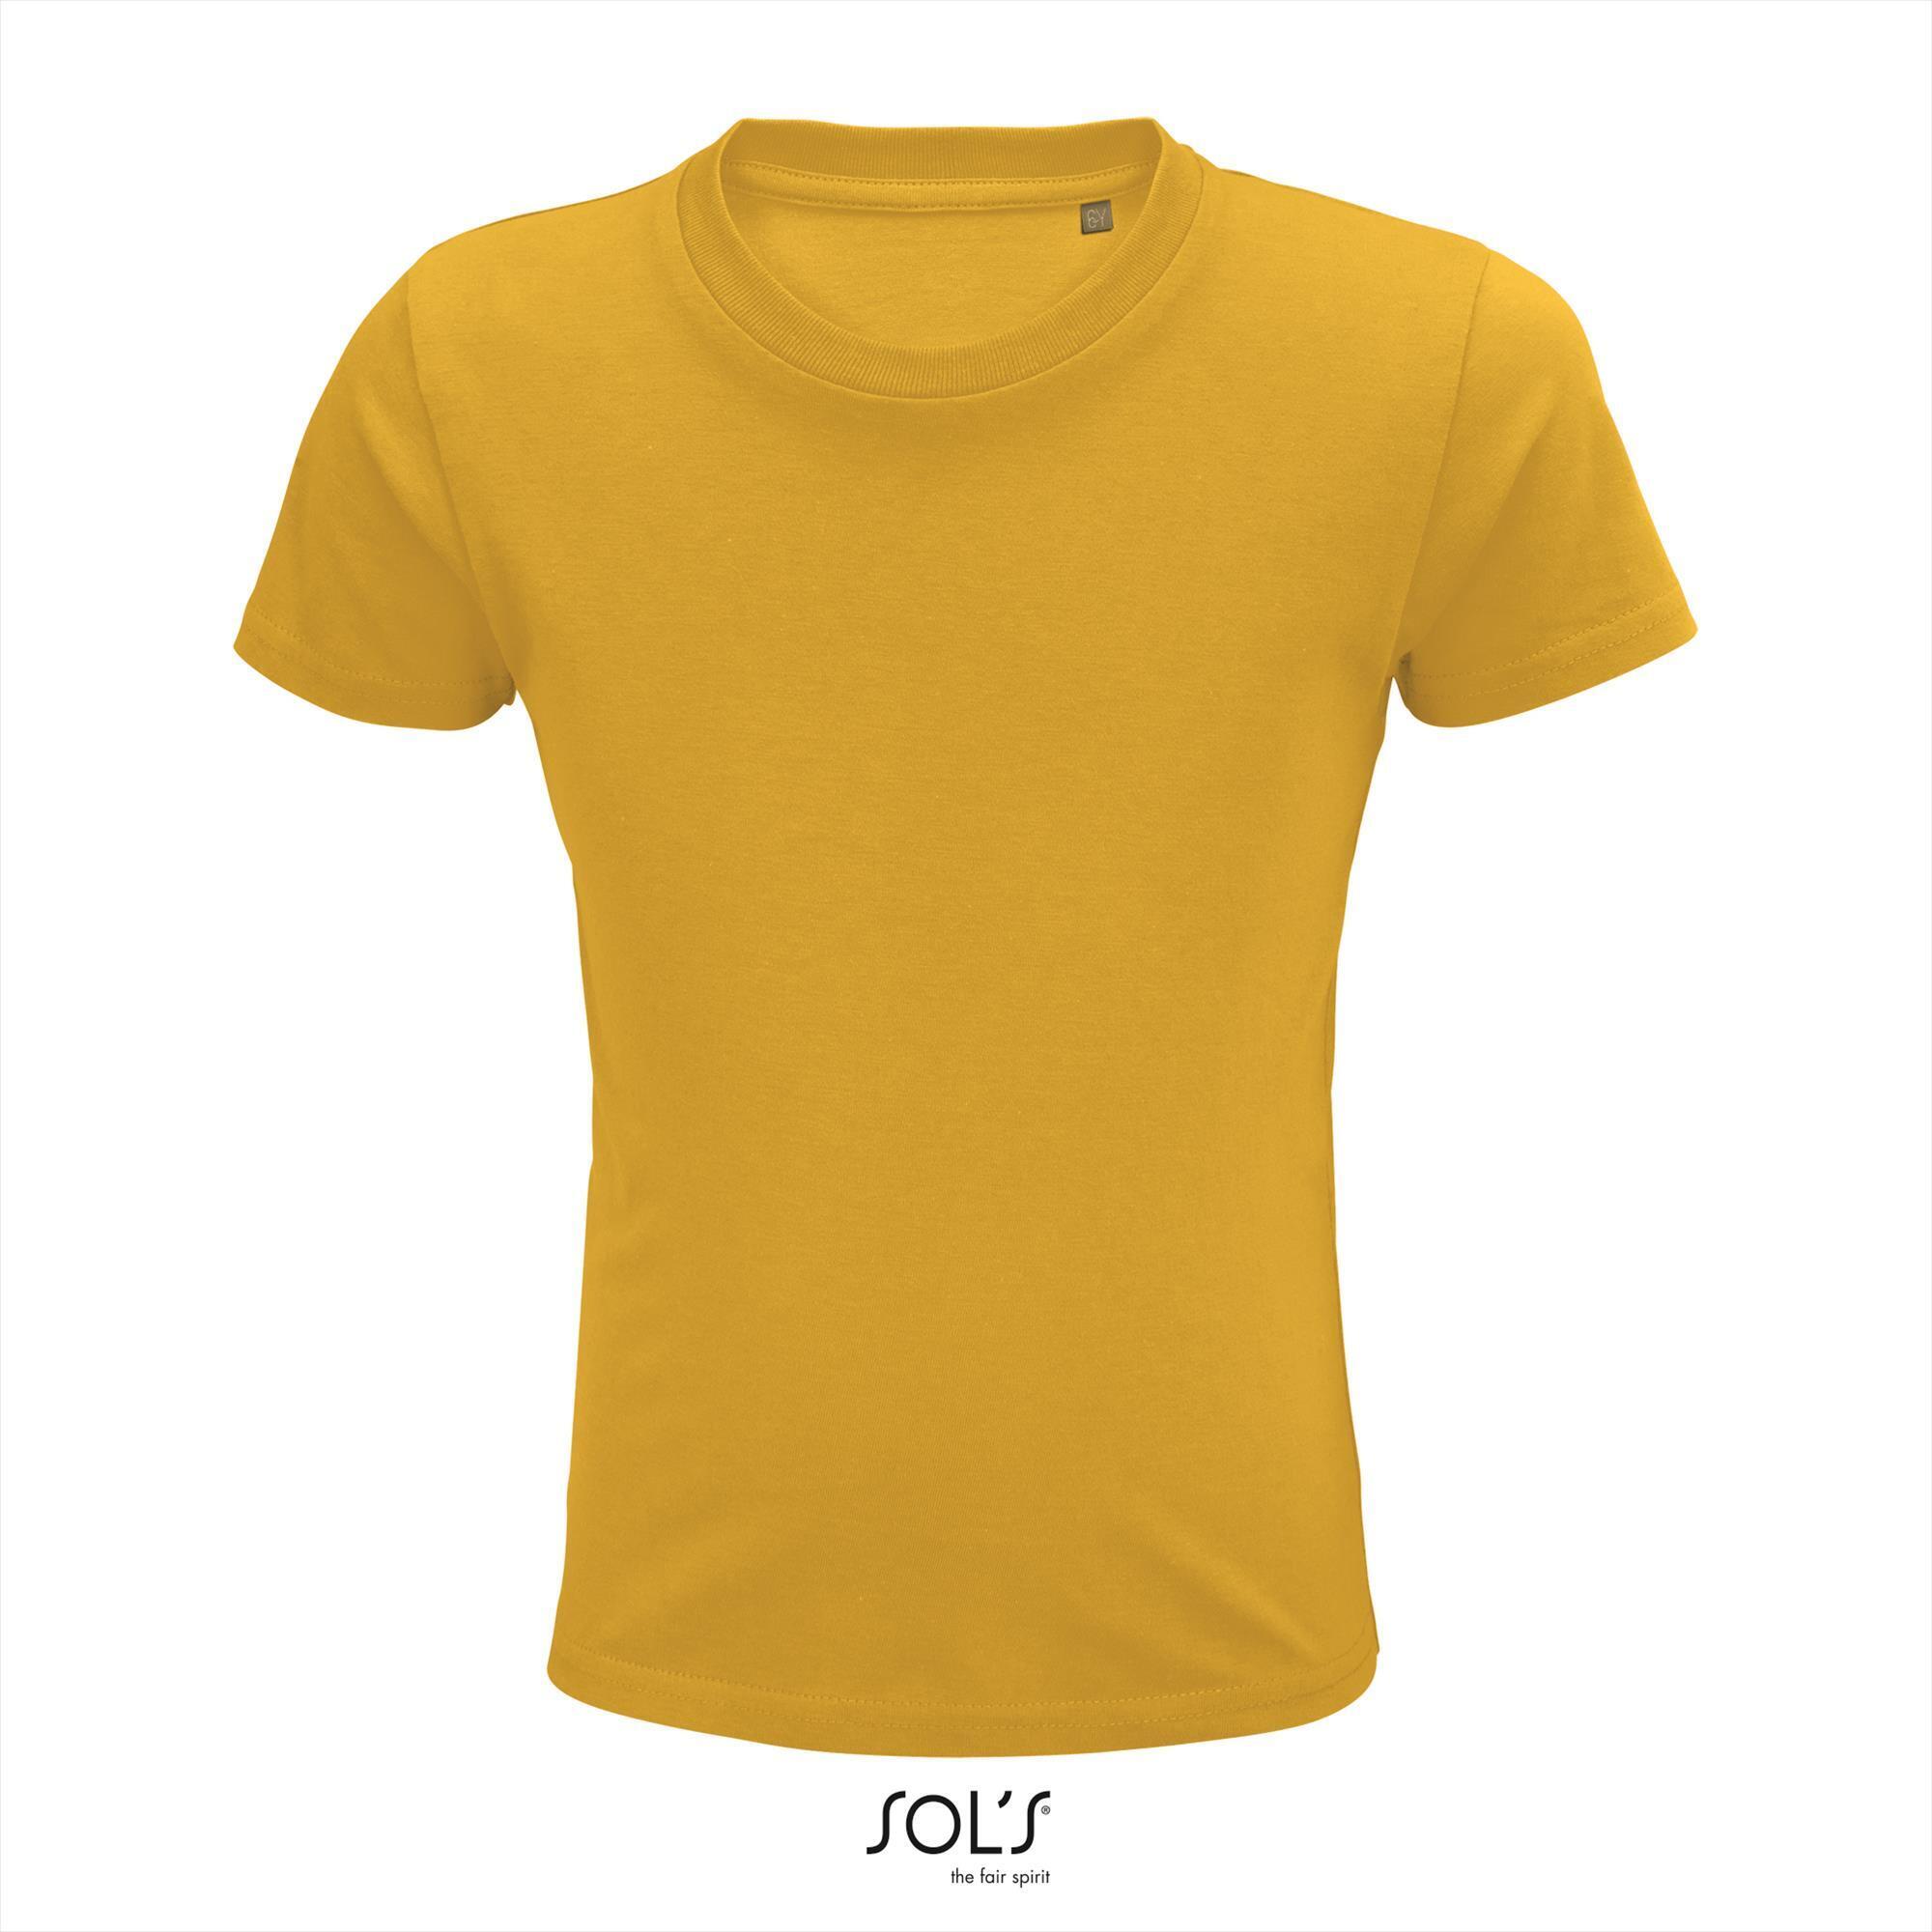 Kinder t-shirt goud geel biologisch katoen ronde hals